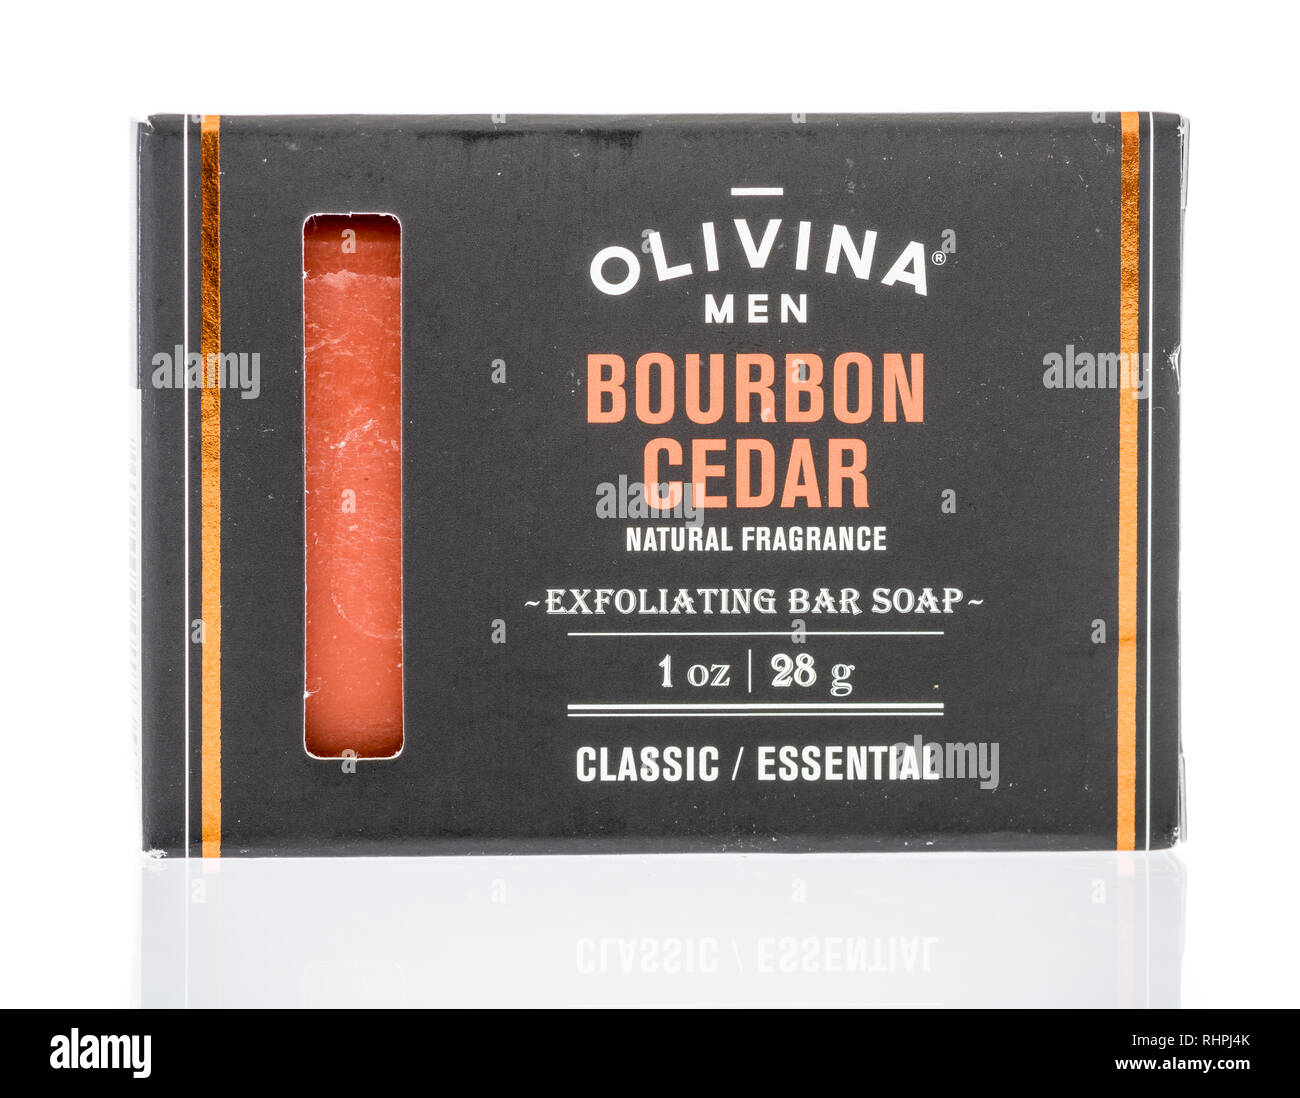 Winneconne, WI - 23 janvier 2019 : un paquet de Olivina hommes bourbon exfoliant savon barre de cèdre sur un fond isolé Banque D'Images